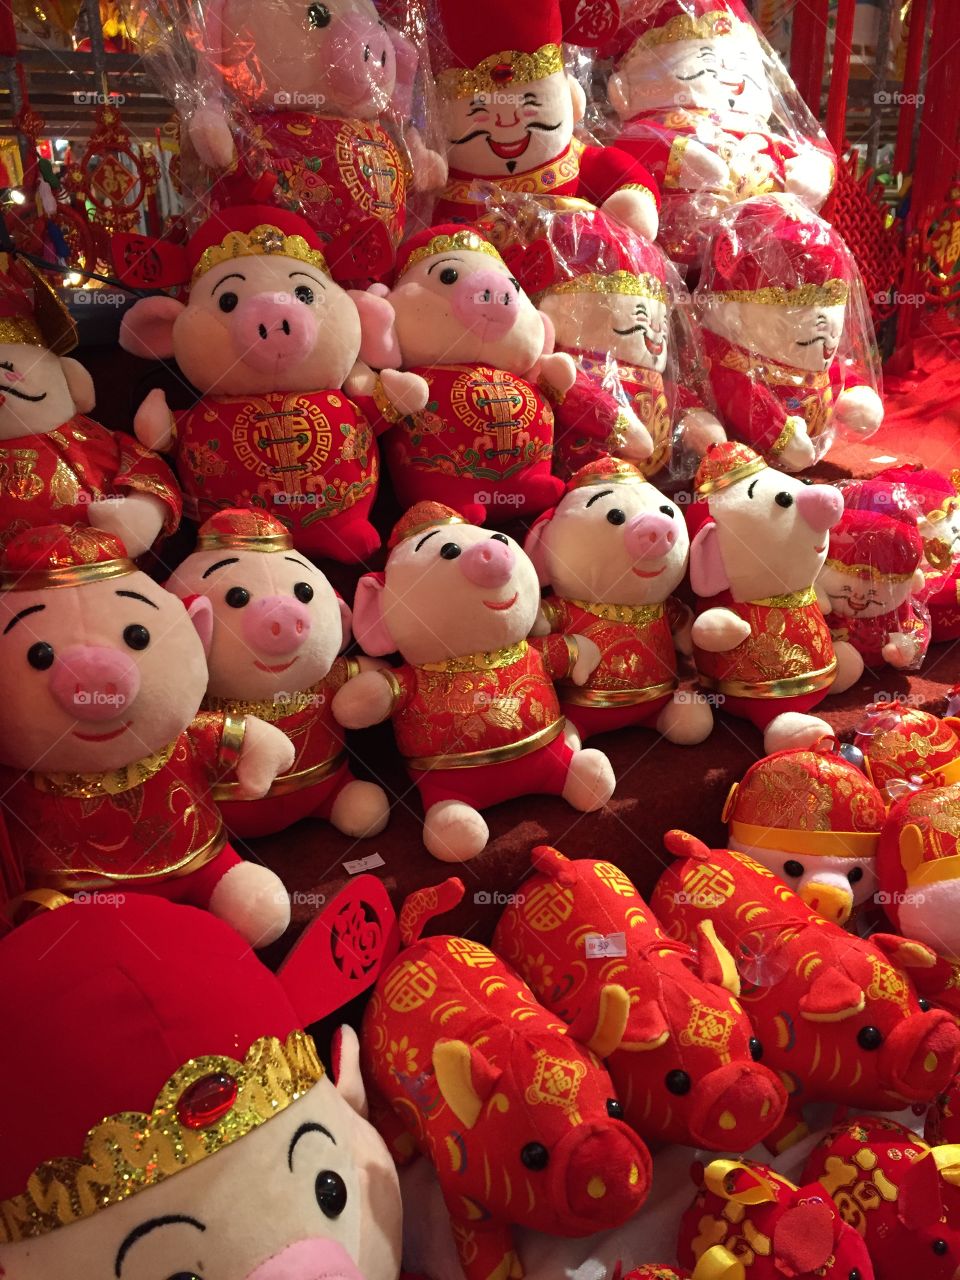 Chinese New Year 